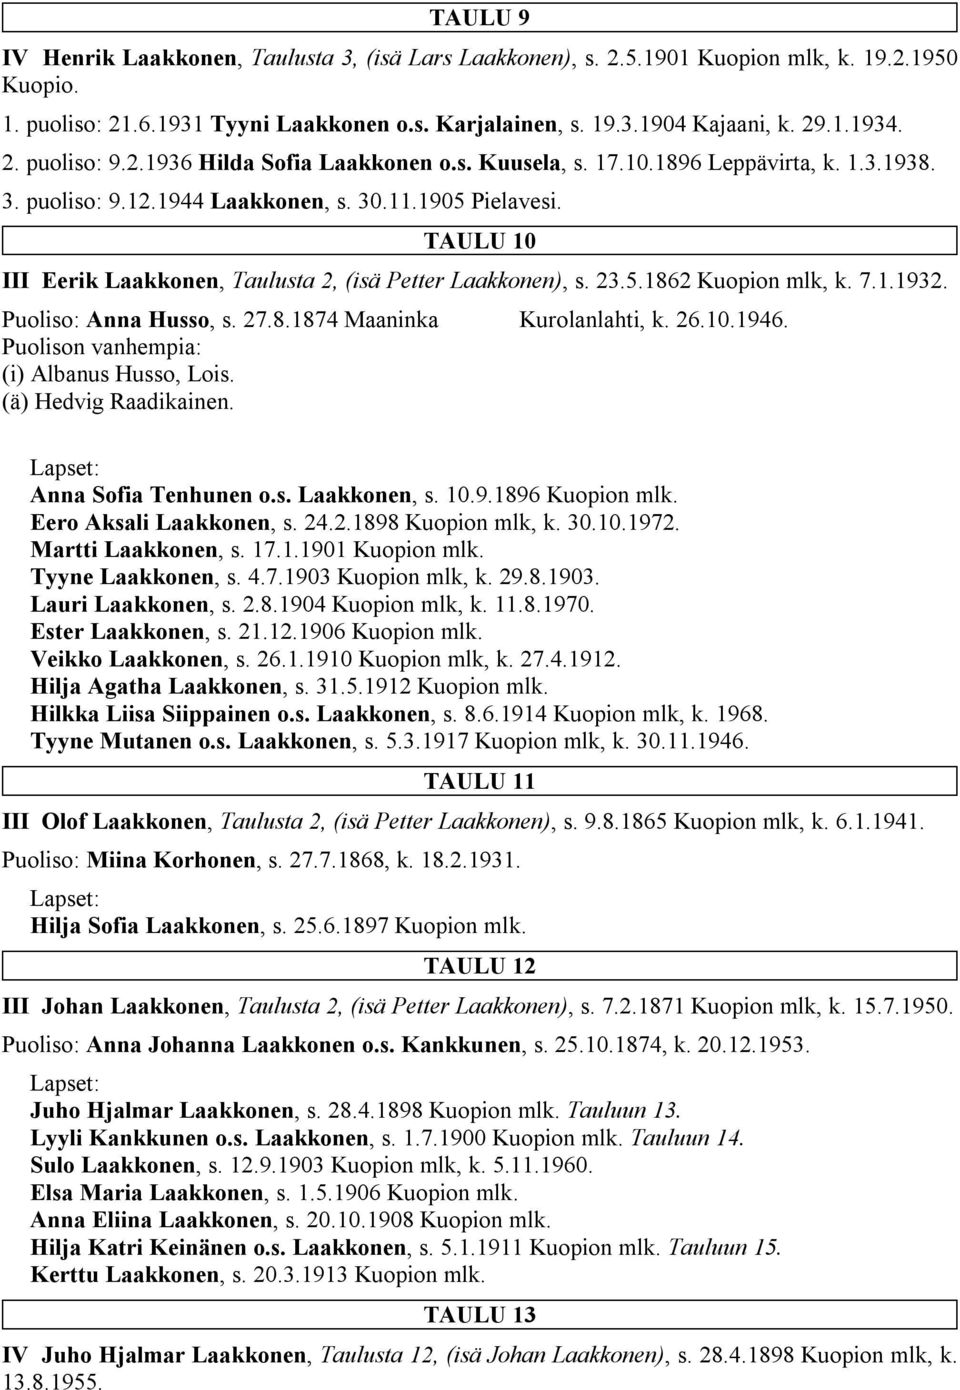 TAULU 10 III Eerik Laakkonen, Taulusta 2, (isä Petter Laakkonen), s. 23.5.1862 Kuopion mlk, k. 7.1.1932. Puoliso: Anna Husso, s. 27.8.1874 Maaninka Kurolanlahti, k. 26.10.1946.